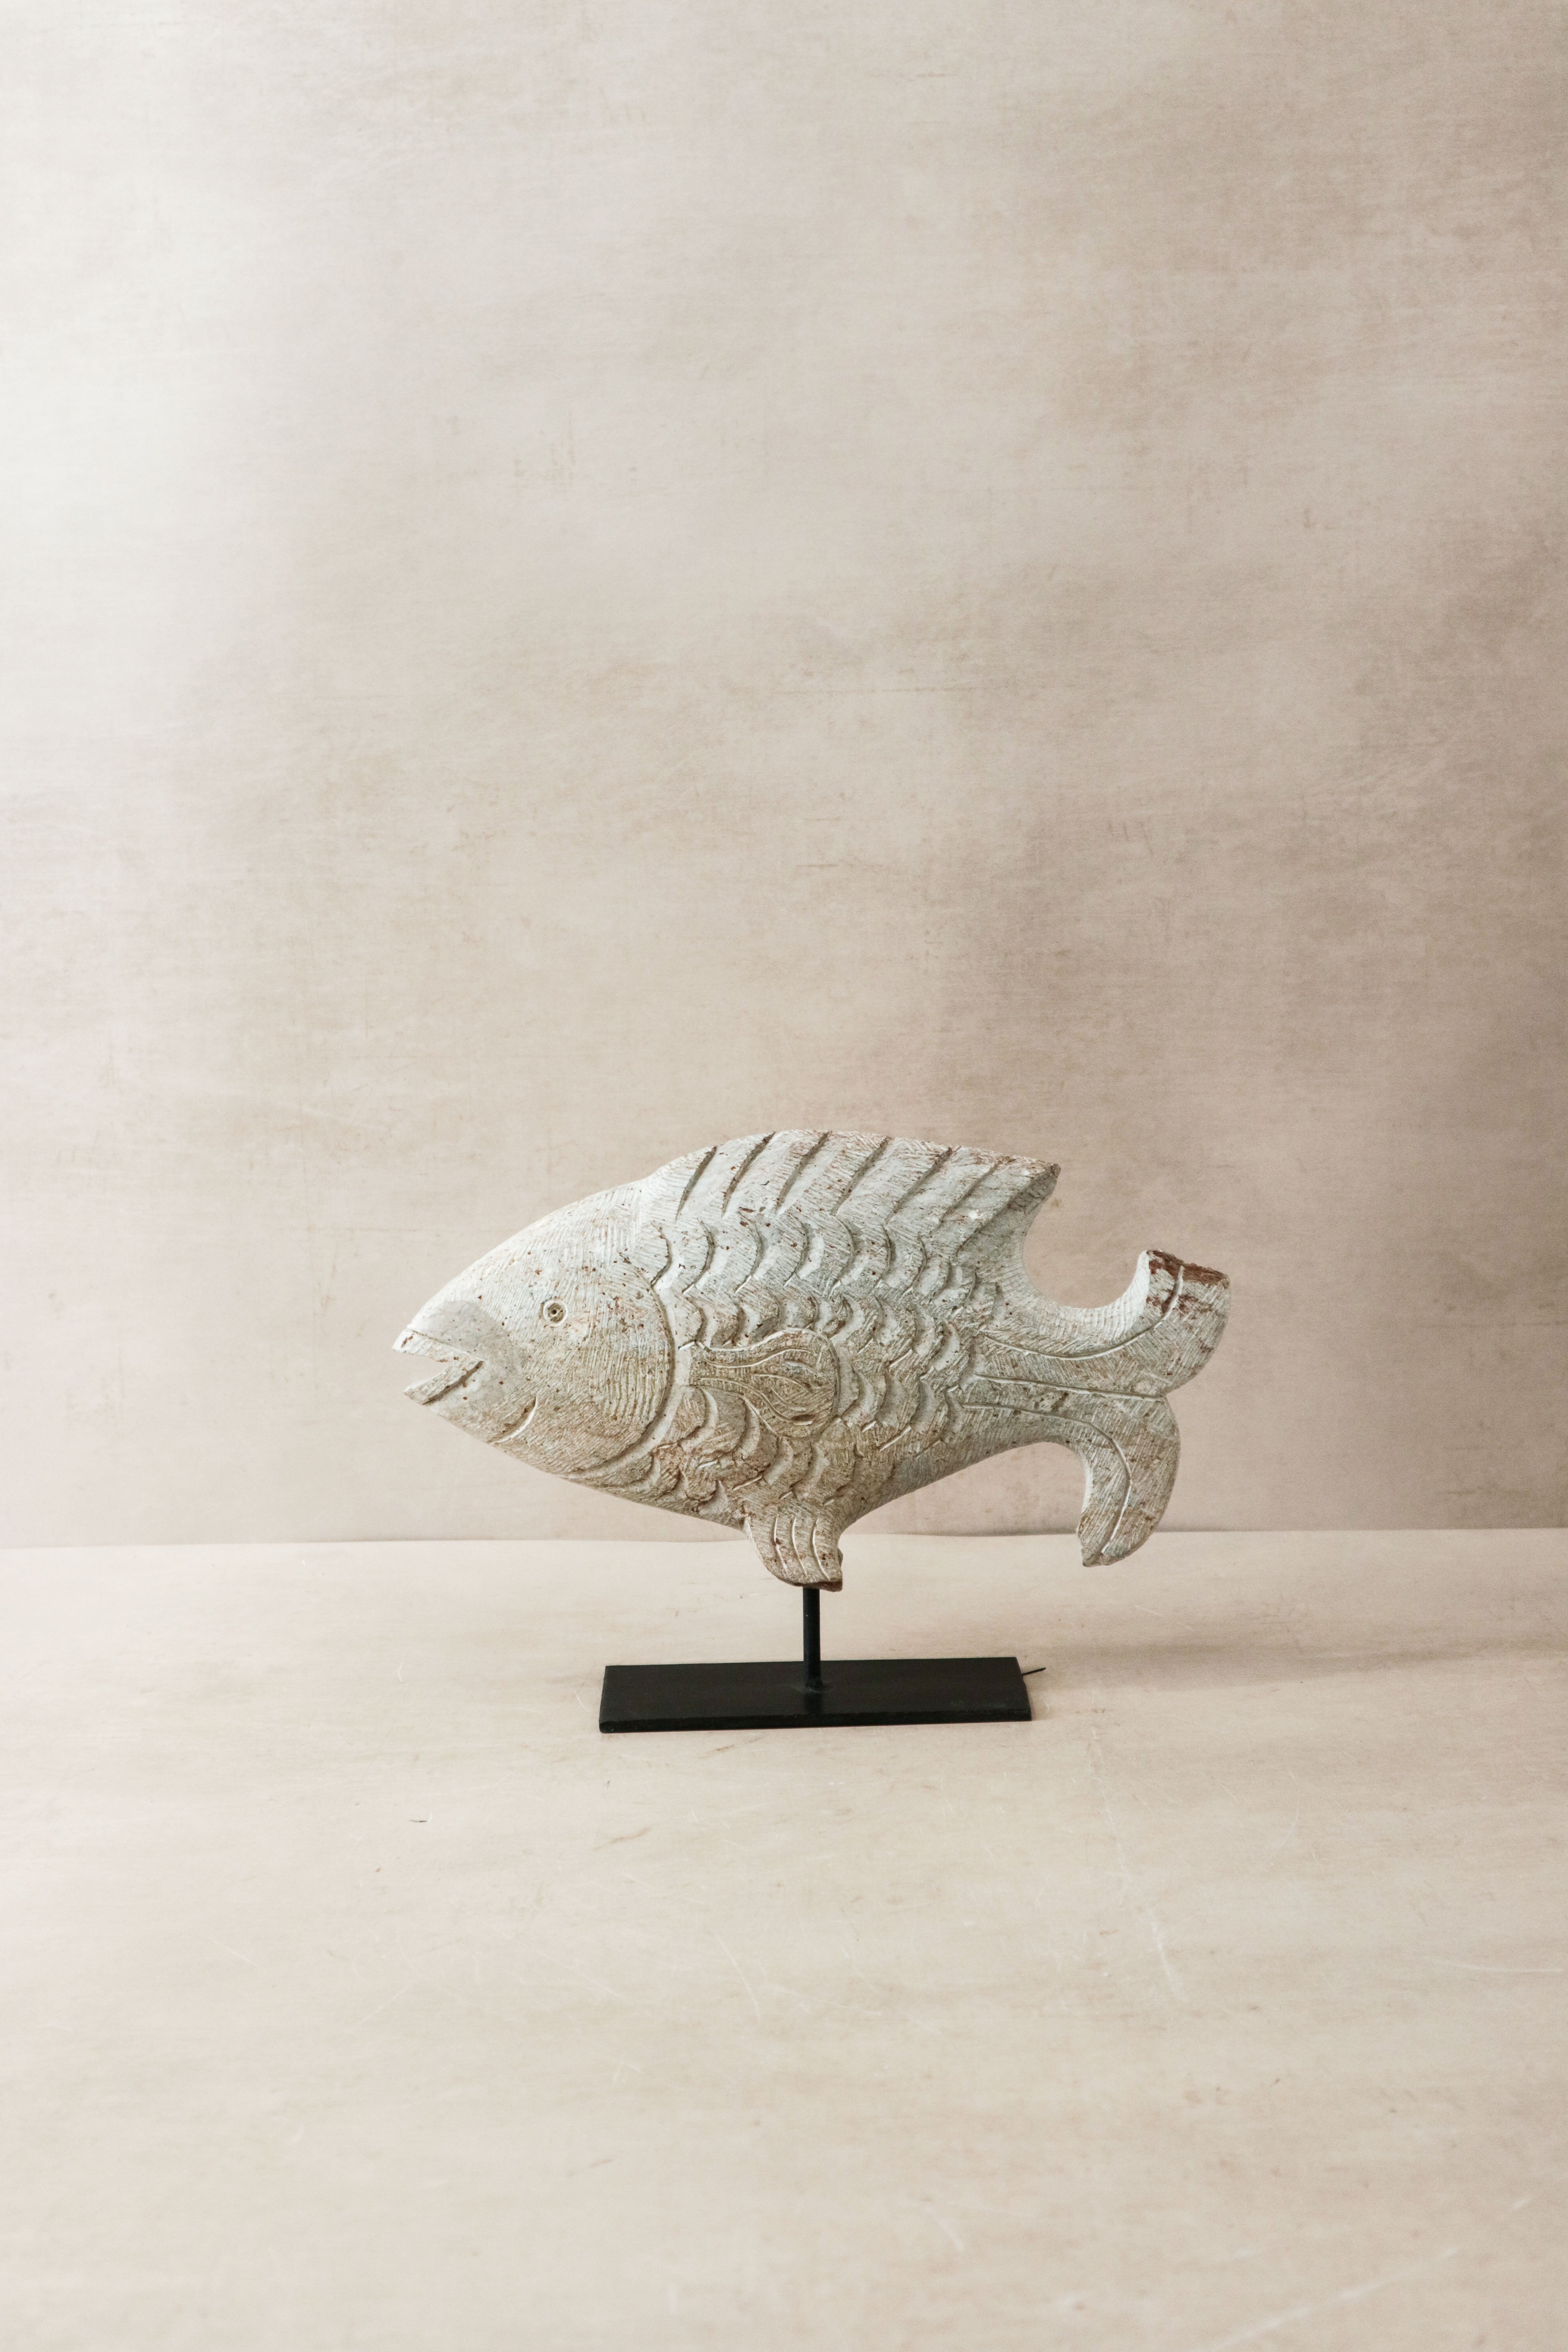 botanicalboysuk Stone Fish Sculpture - Zimbabwe - 36.1